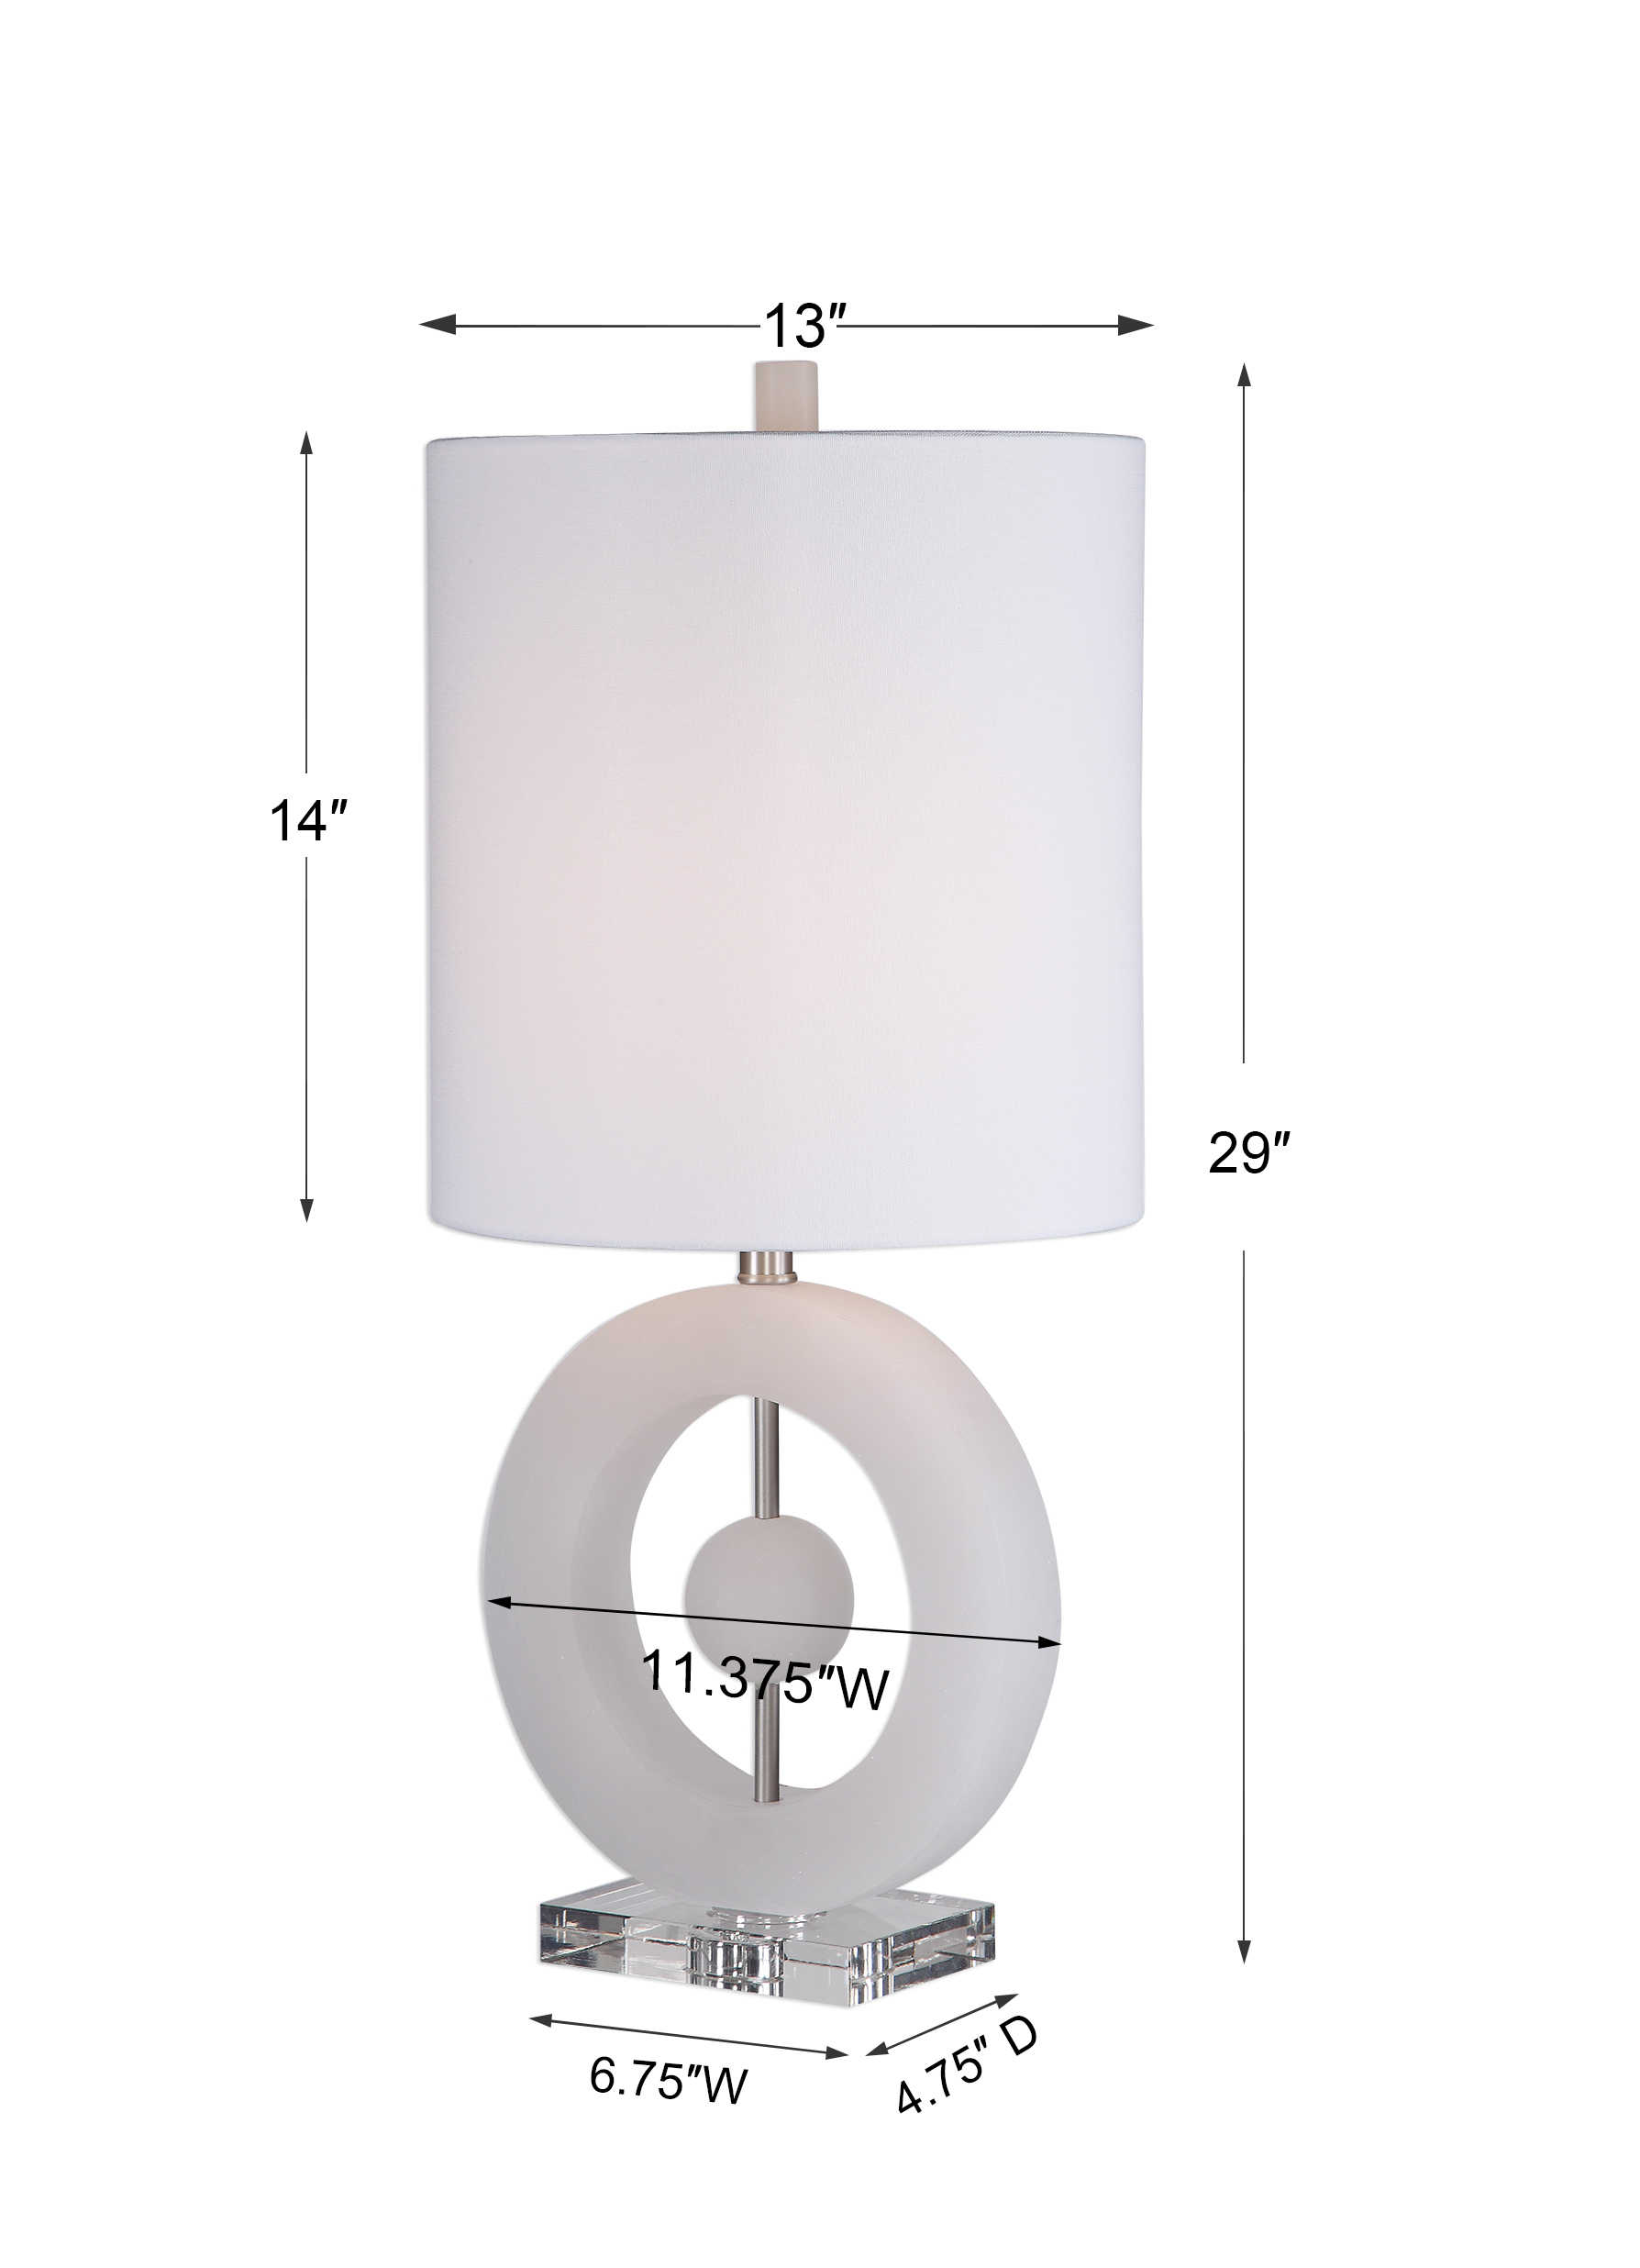 3 x Müller-luz LED renolamp lámparas versión 2-in-1 blanco e27 3 x 11w Filament